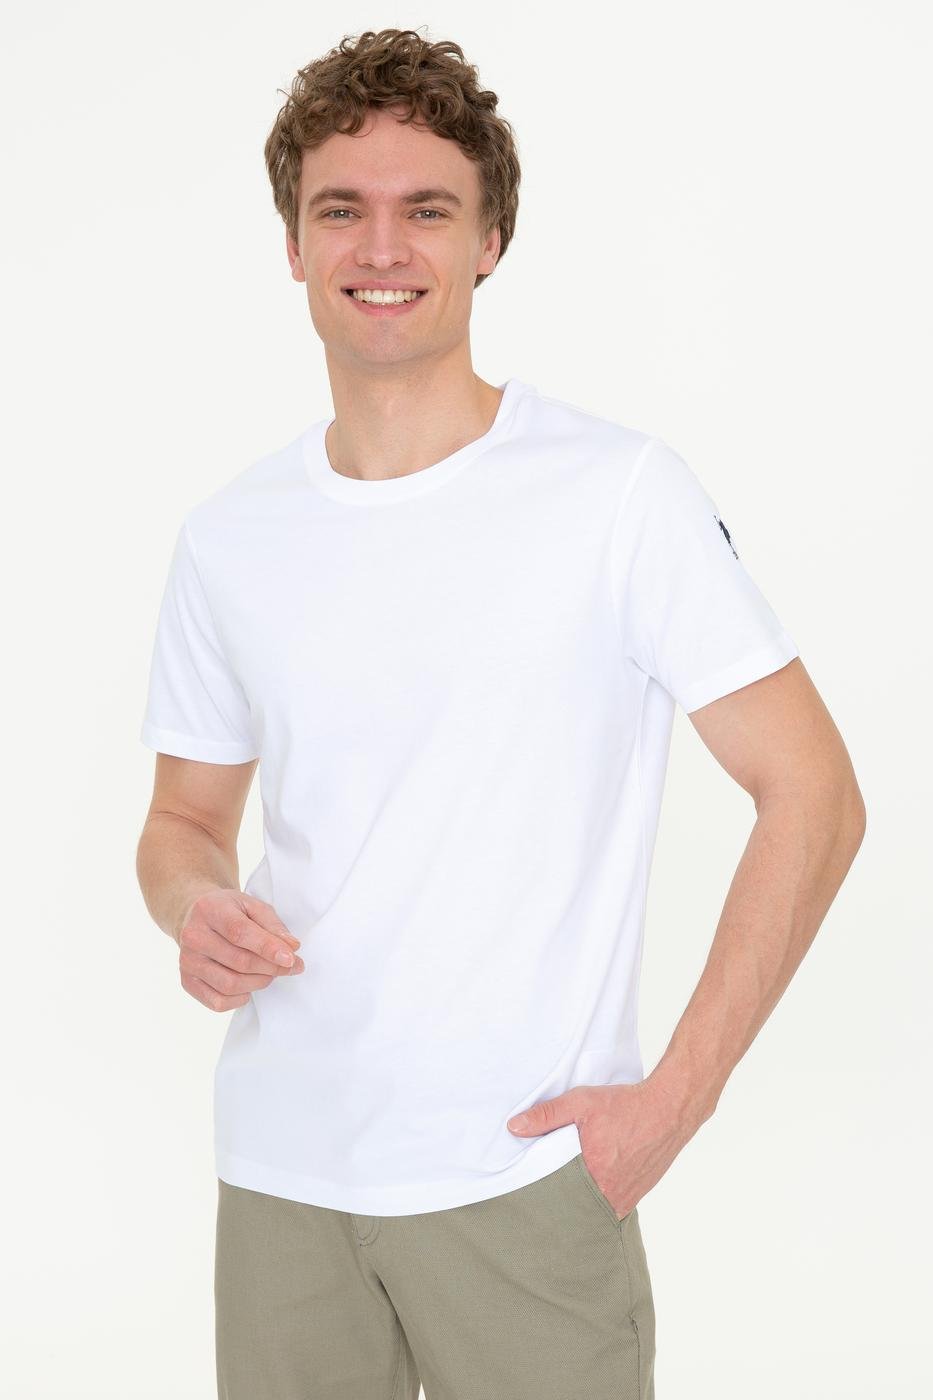 US Polo Assn. Crew Neck T-Shirt Small Logo - Men